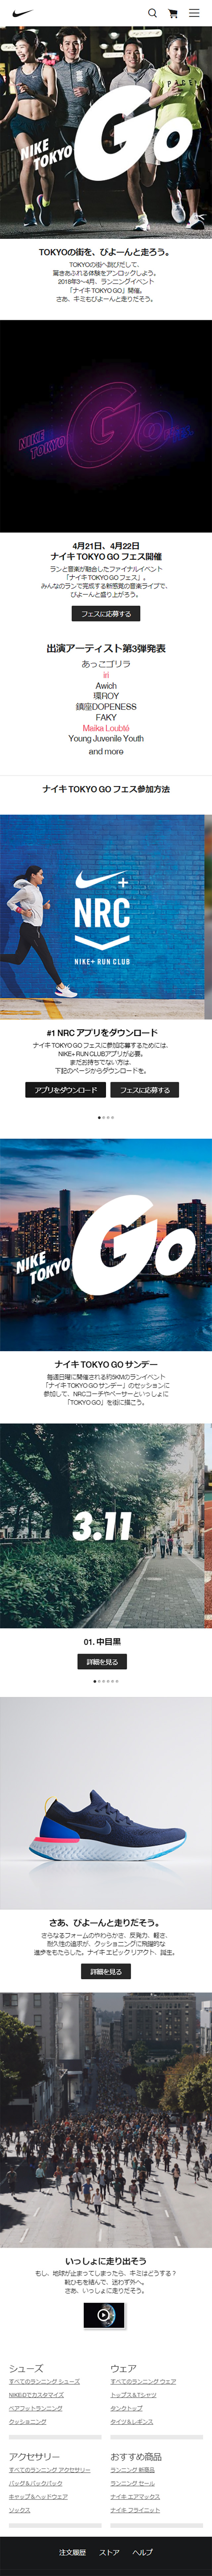 ナイキ TOKYO GO_sp_1